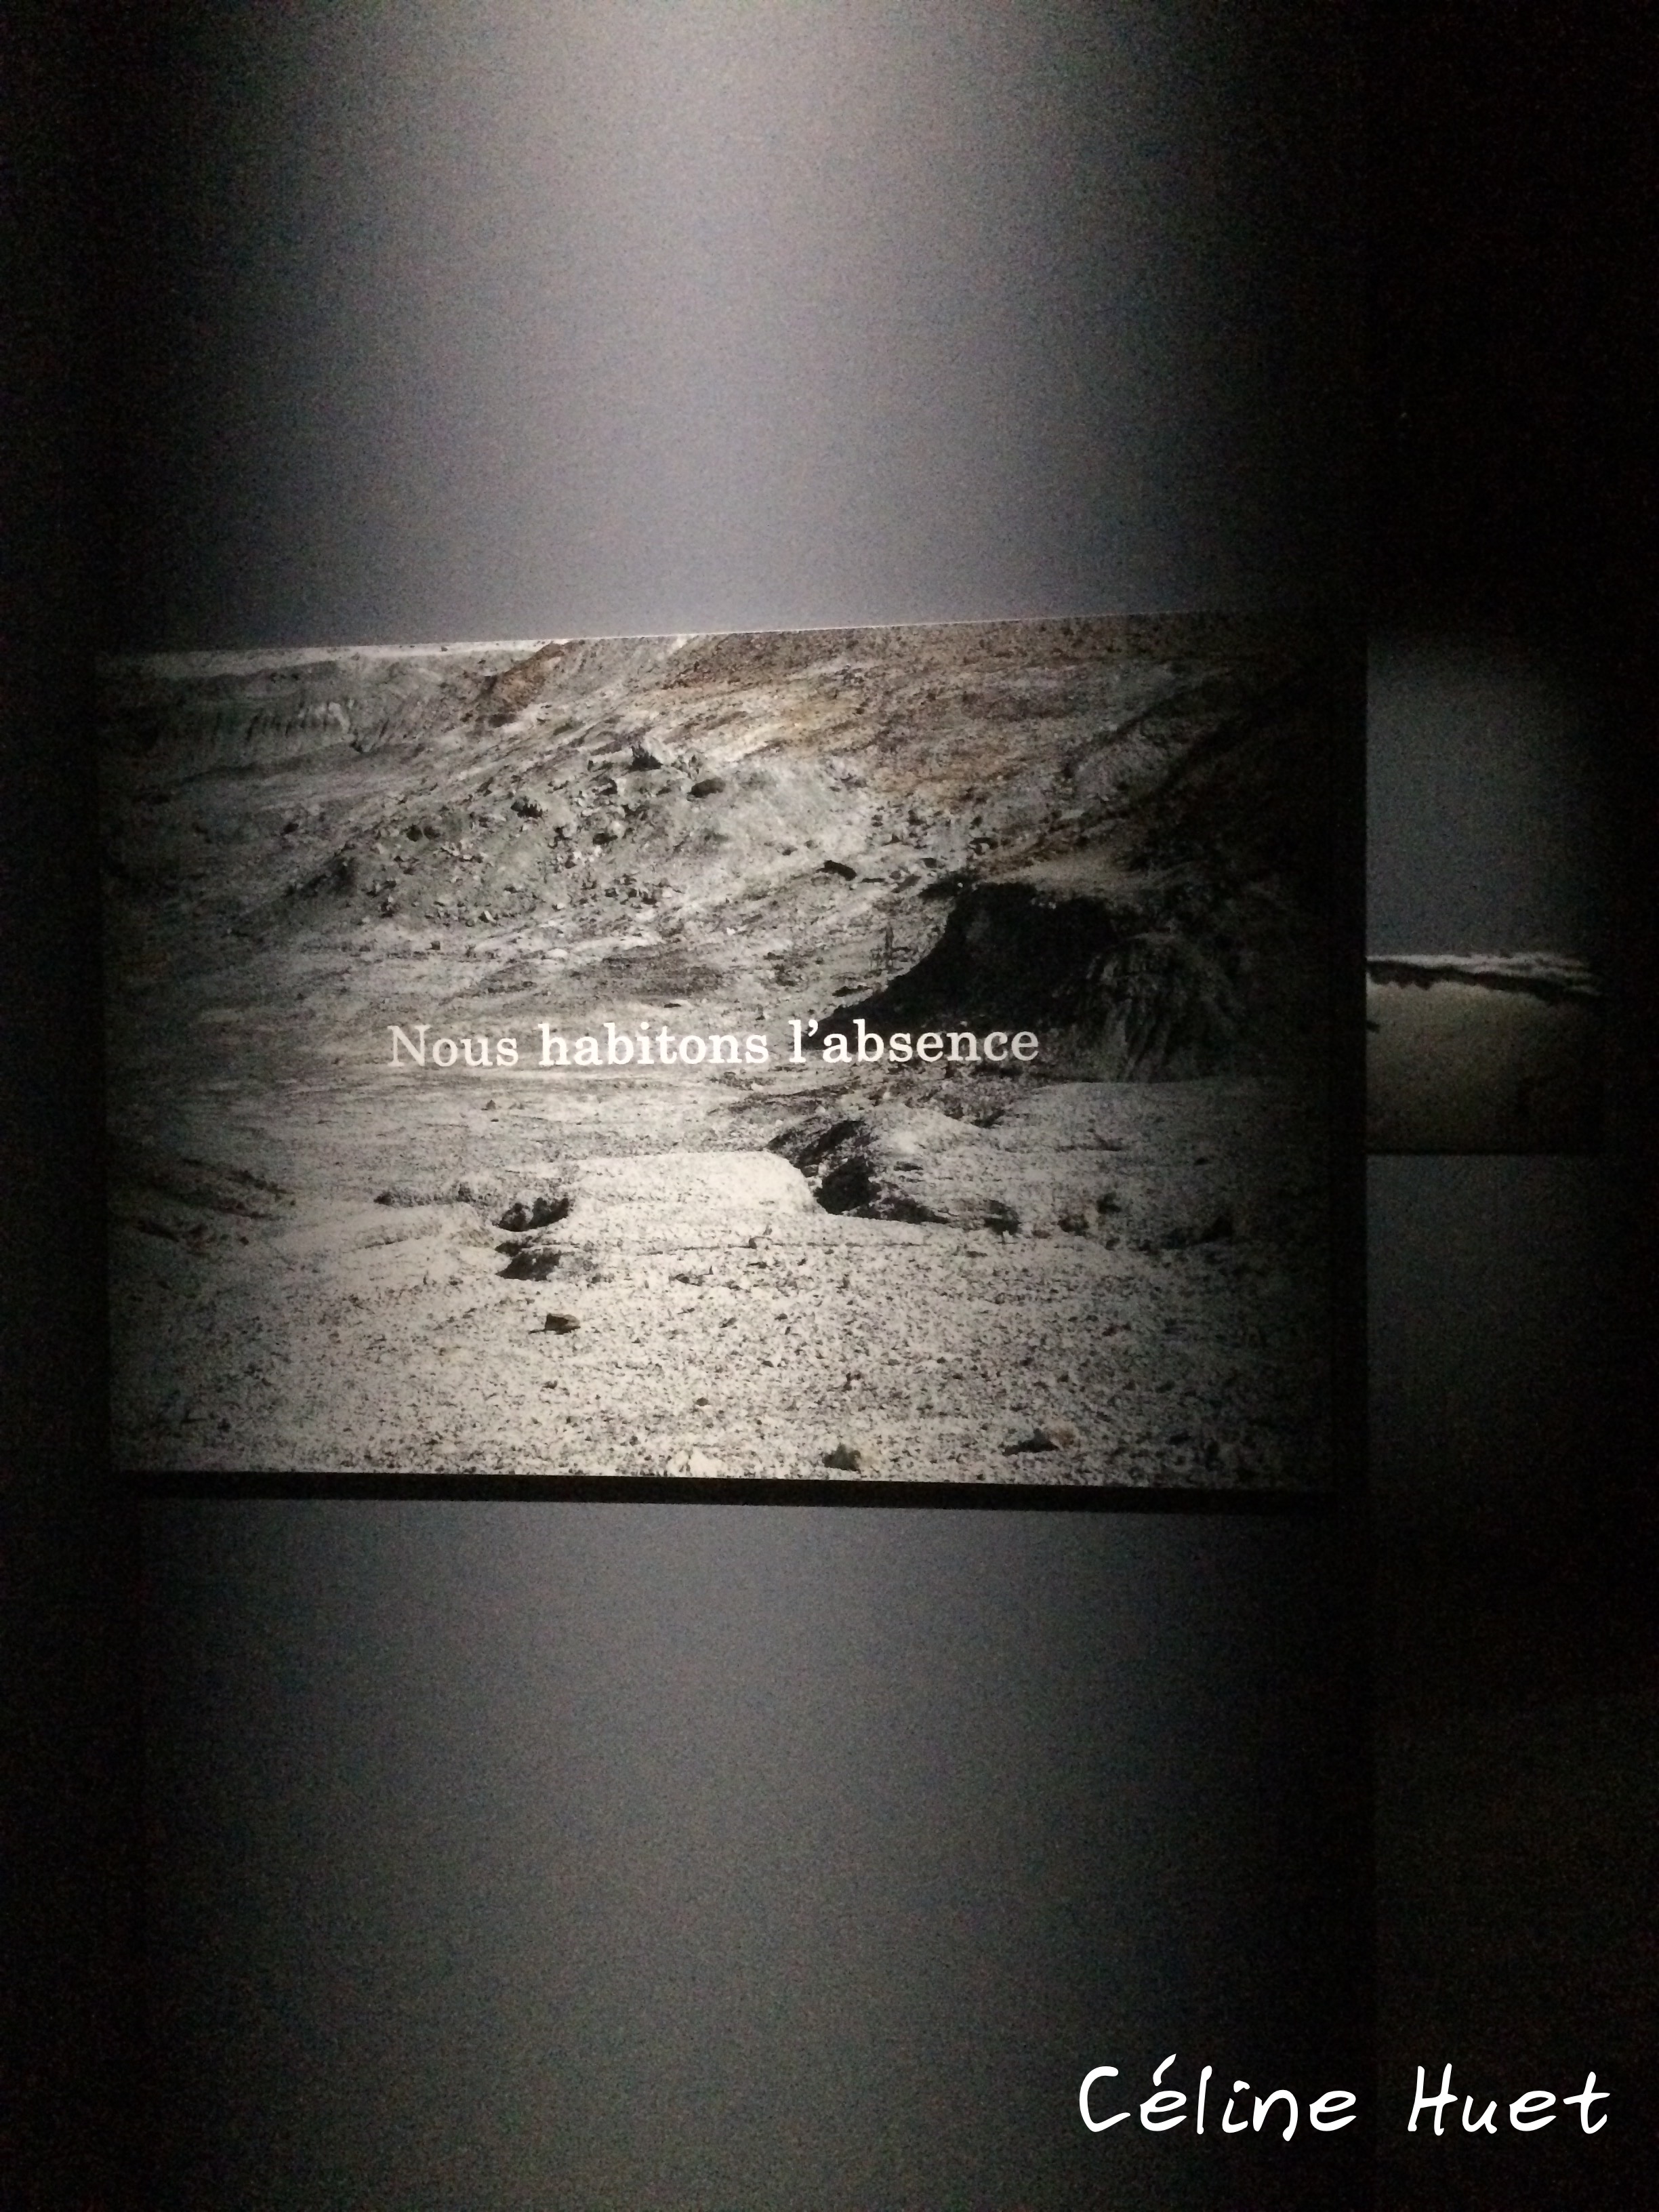 Exposition Rester vivant Michel Houellebecq Palais de Tokyo Paris